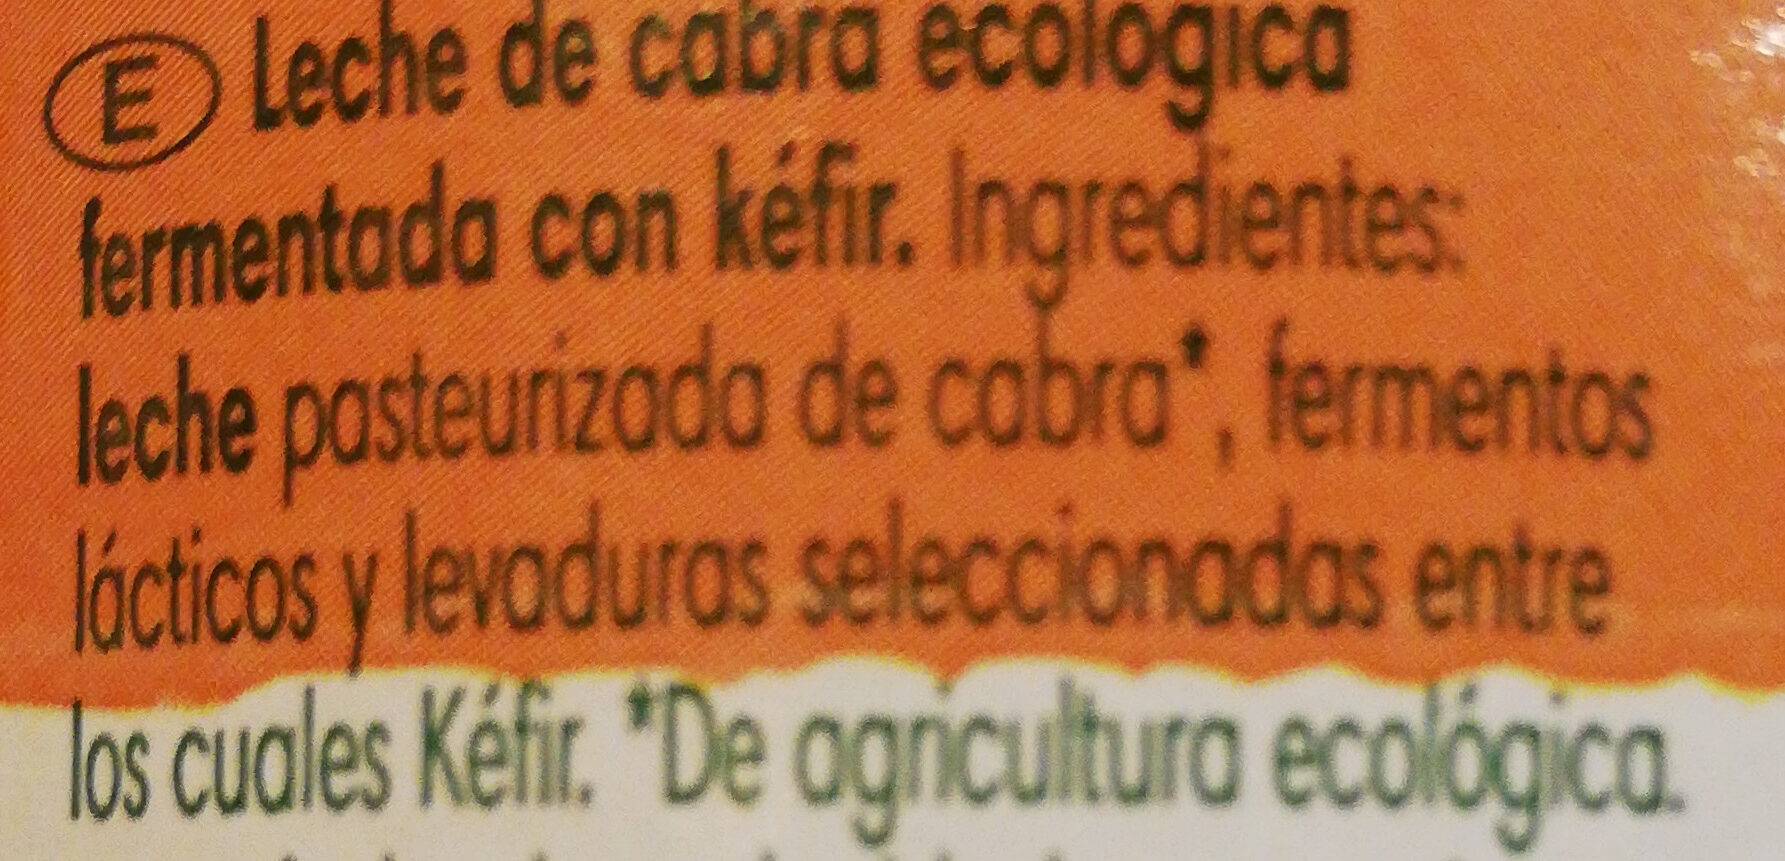 Kefir de cabra - Ingredients - es